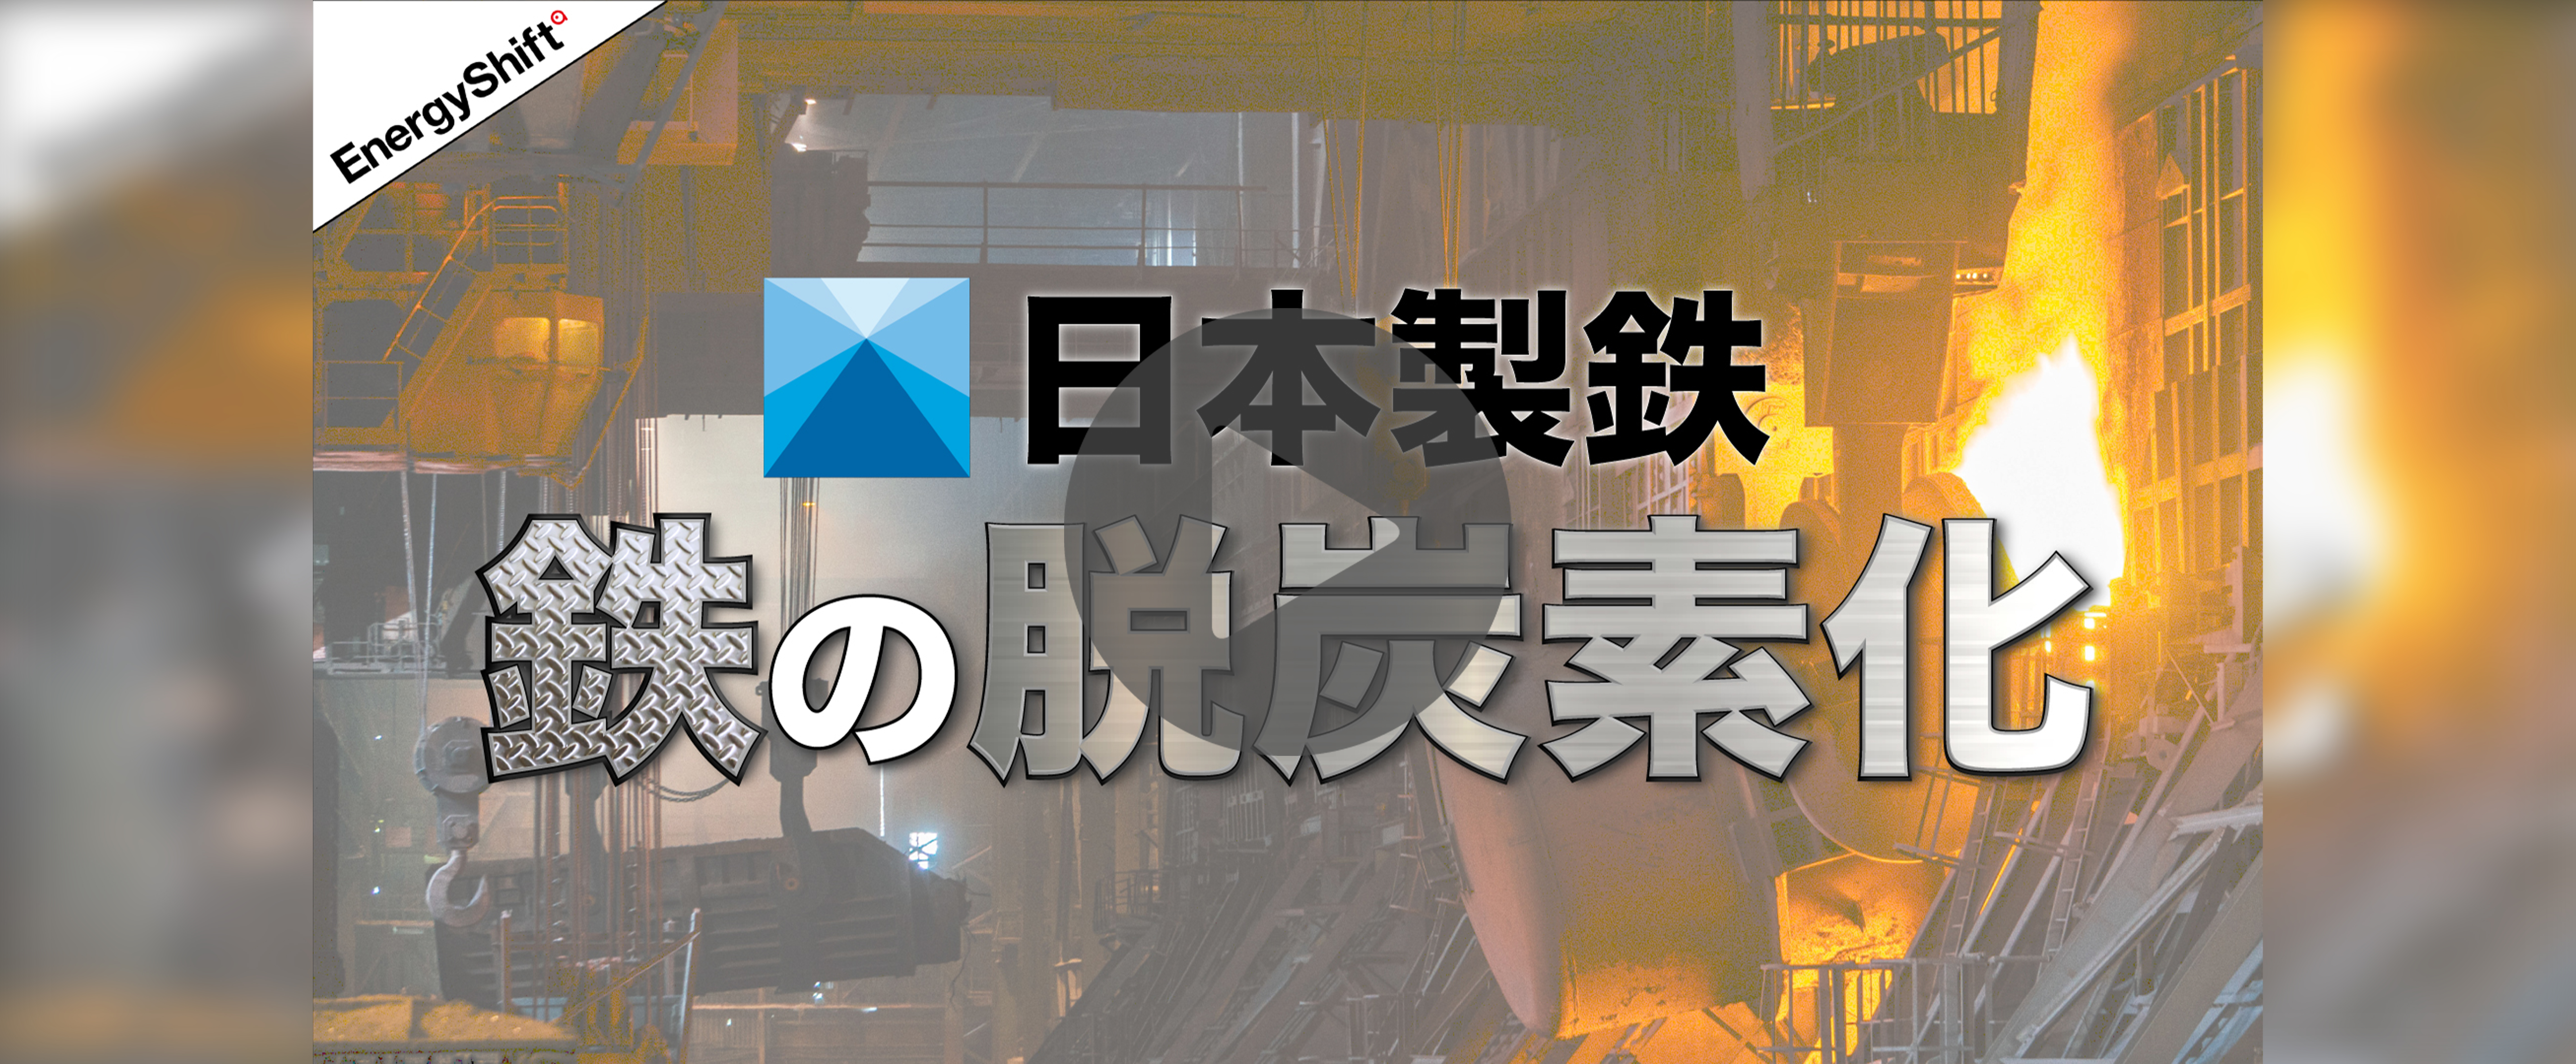 【YouTube】日本製鉄「鉄は国家なり」から「脱炭素は国家なり」へ